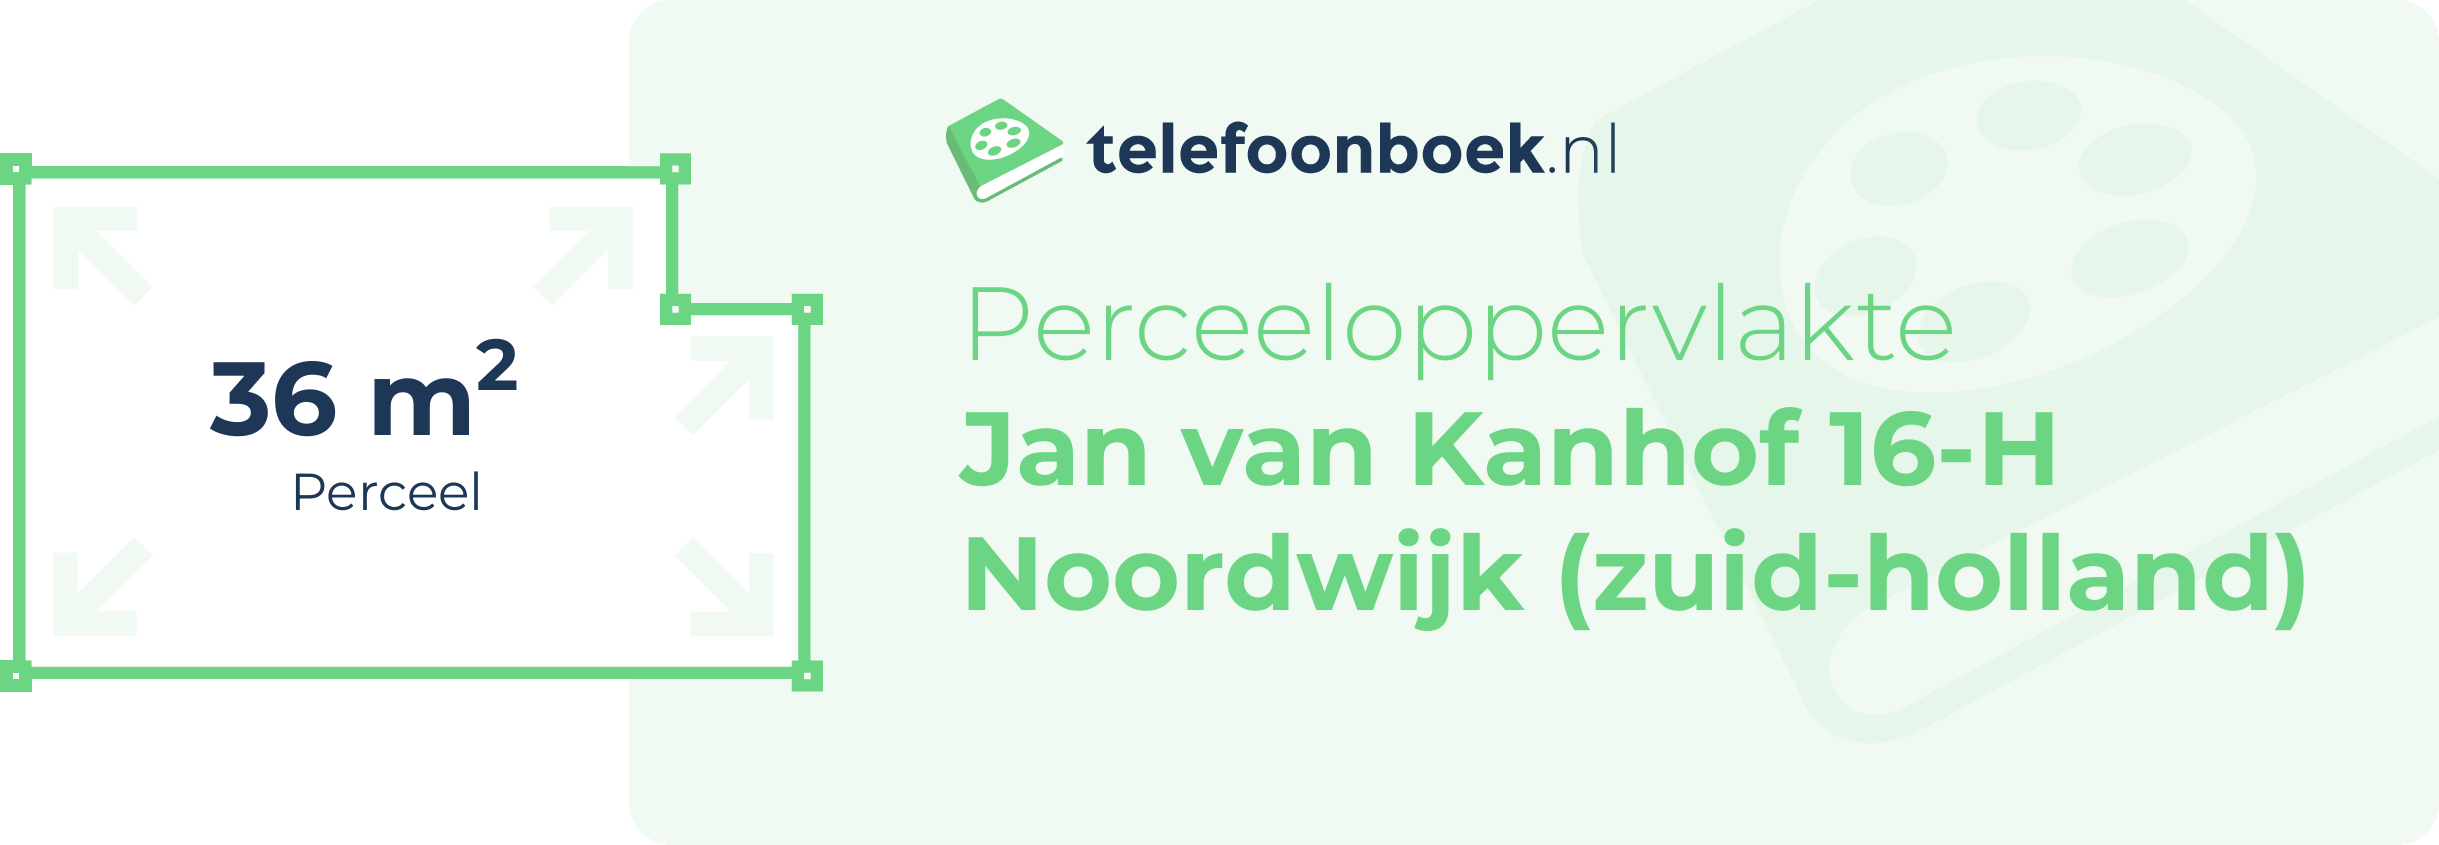 Perceeloppervlakte Jan Van Kanhof 16-H Noordwijk (Zuid-Holland)